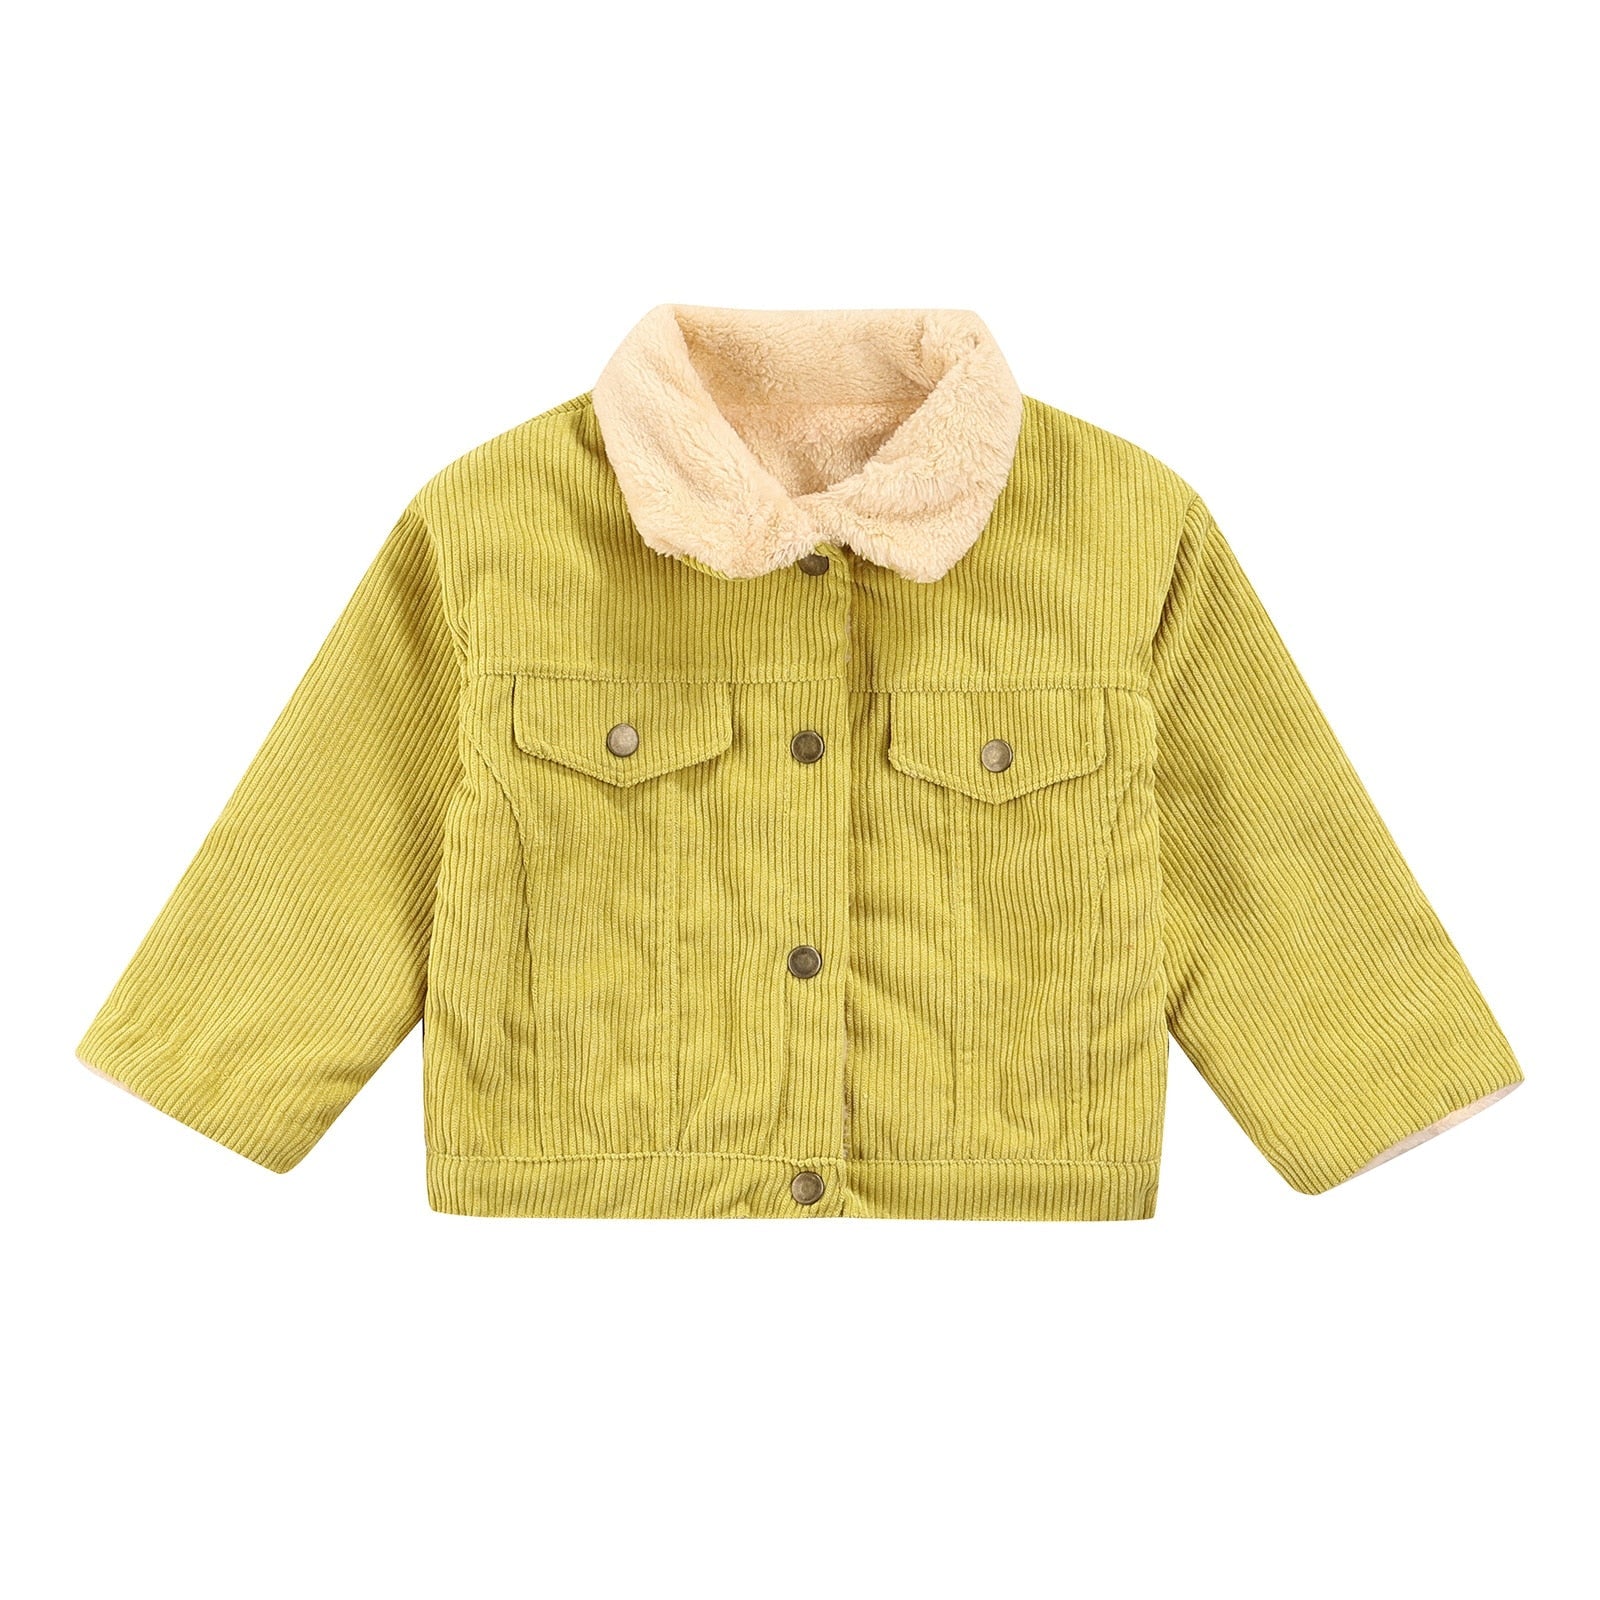 Jaqueta Infantil Canelada Forrada jaqueta Loja Click Certo Amarelo 1-2 anos 39cm 